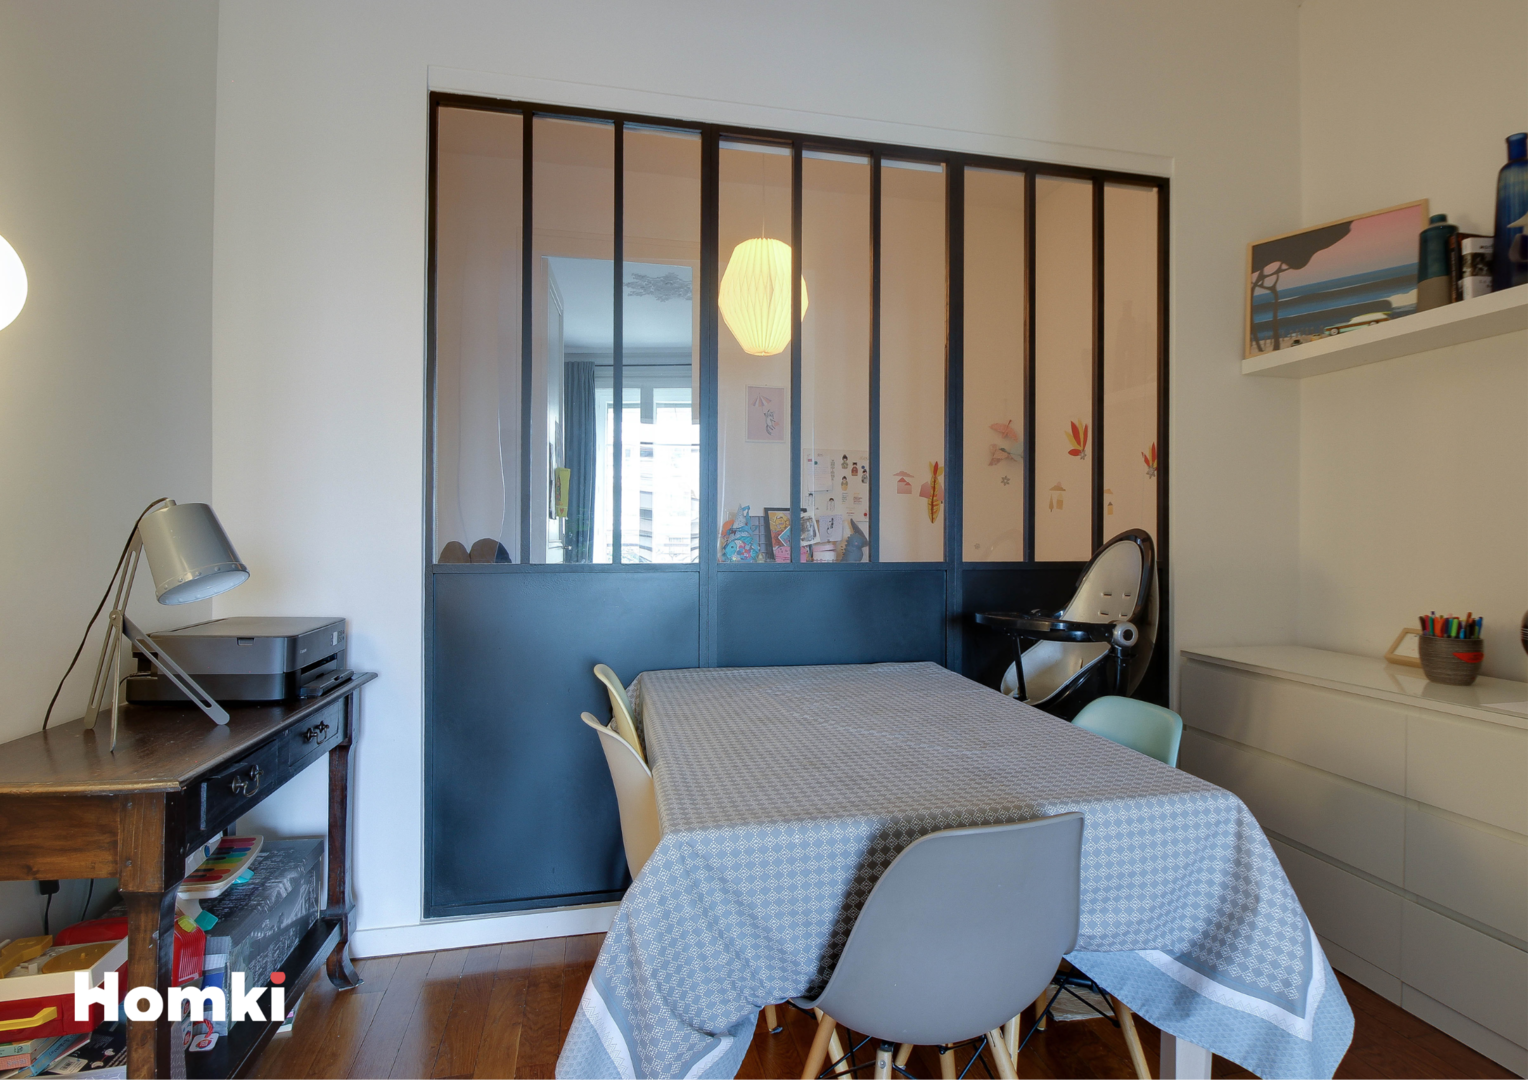 Homki - Vente Appartement  de 71.24 m² à Villeurbanne 69100